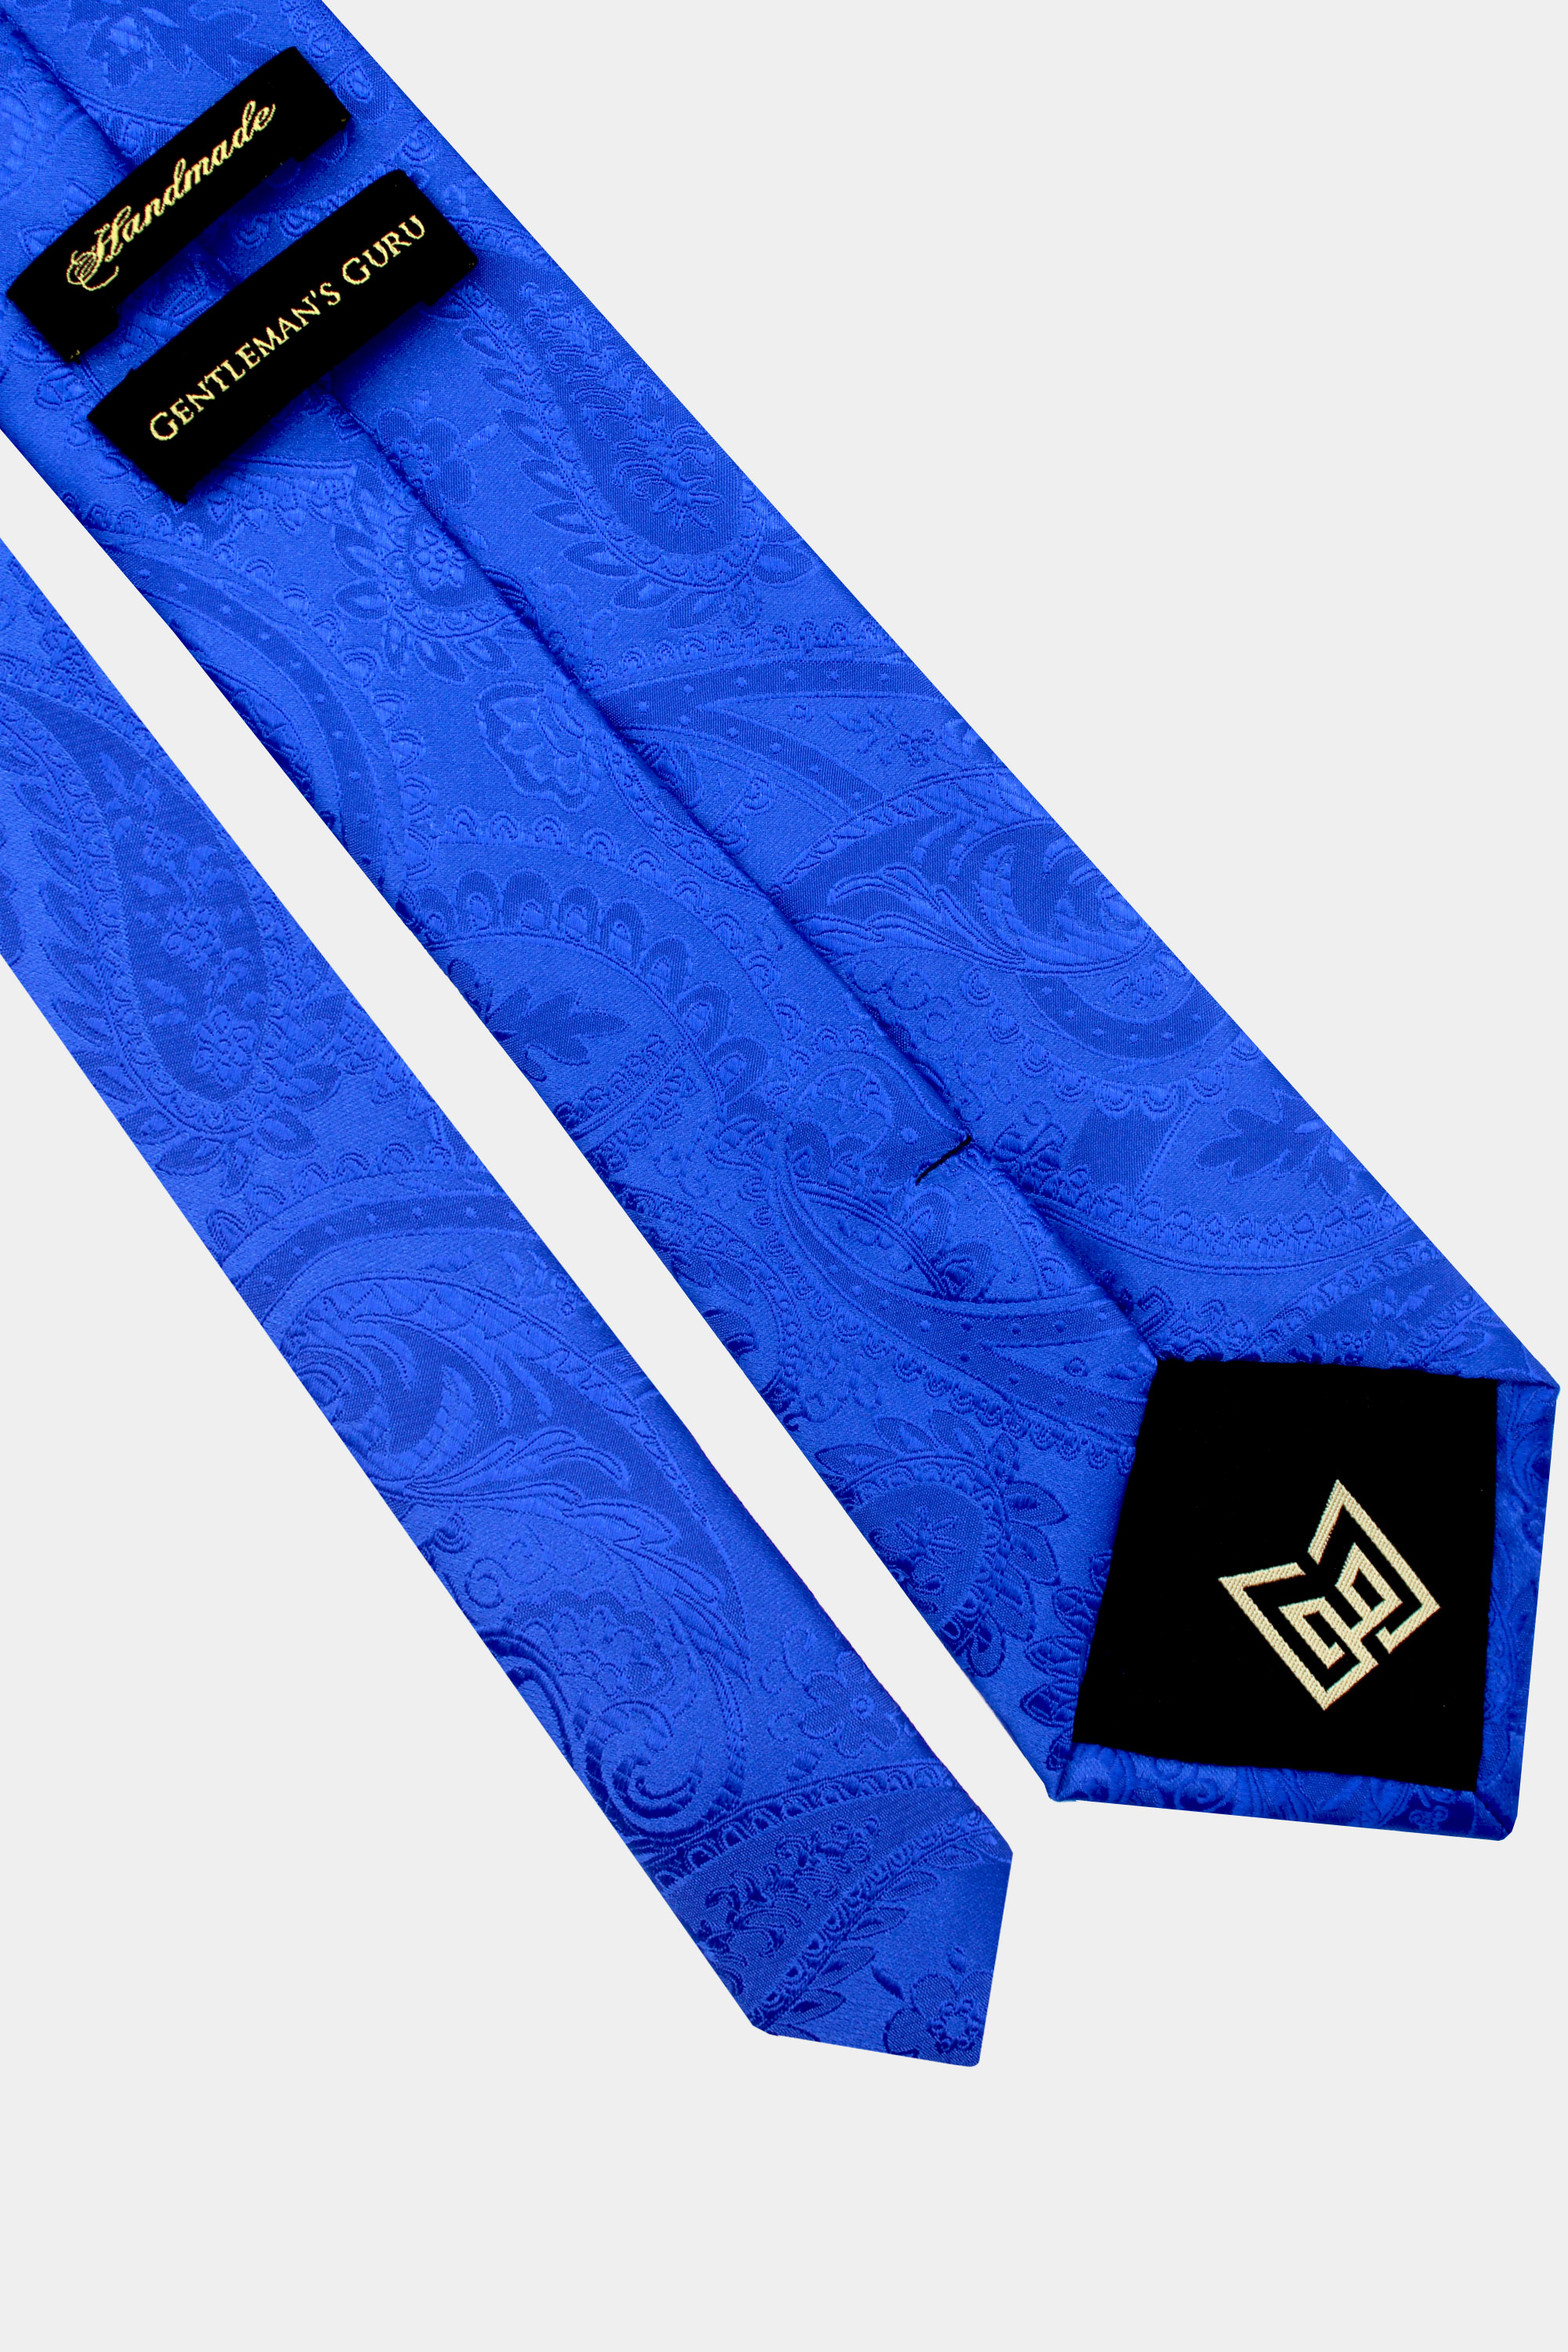 Royal-Blue-Paisley-Tie-from-Gentlemansguru.com